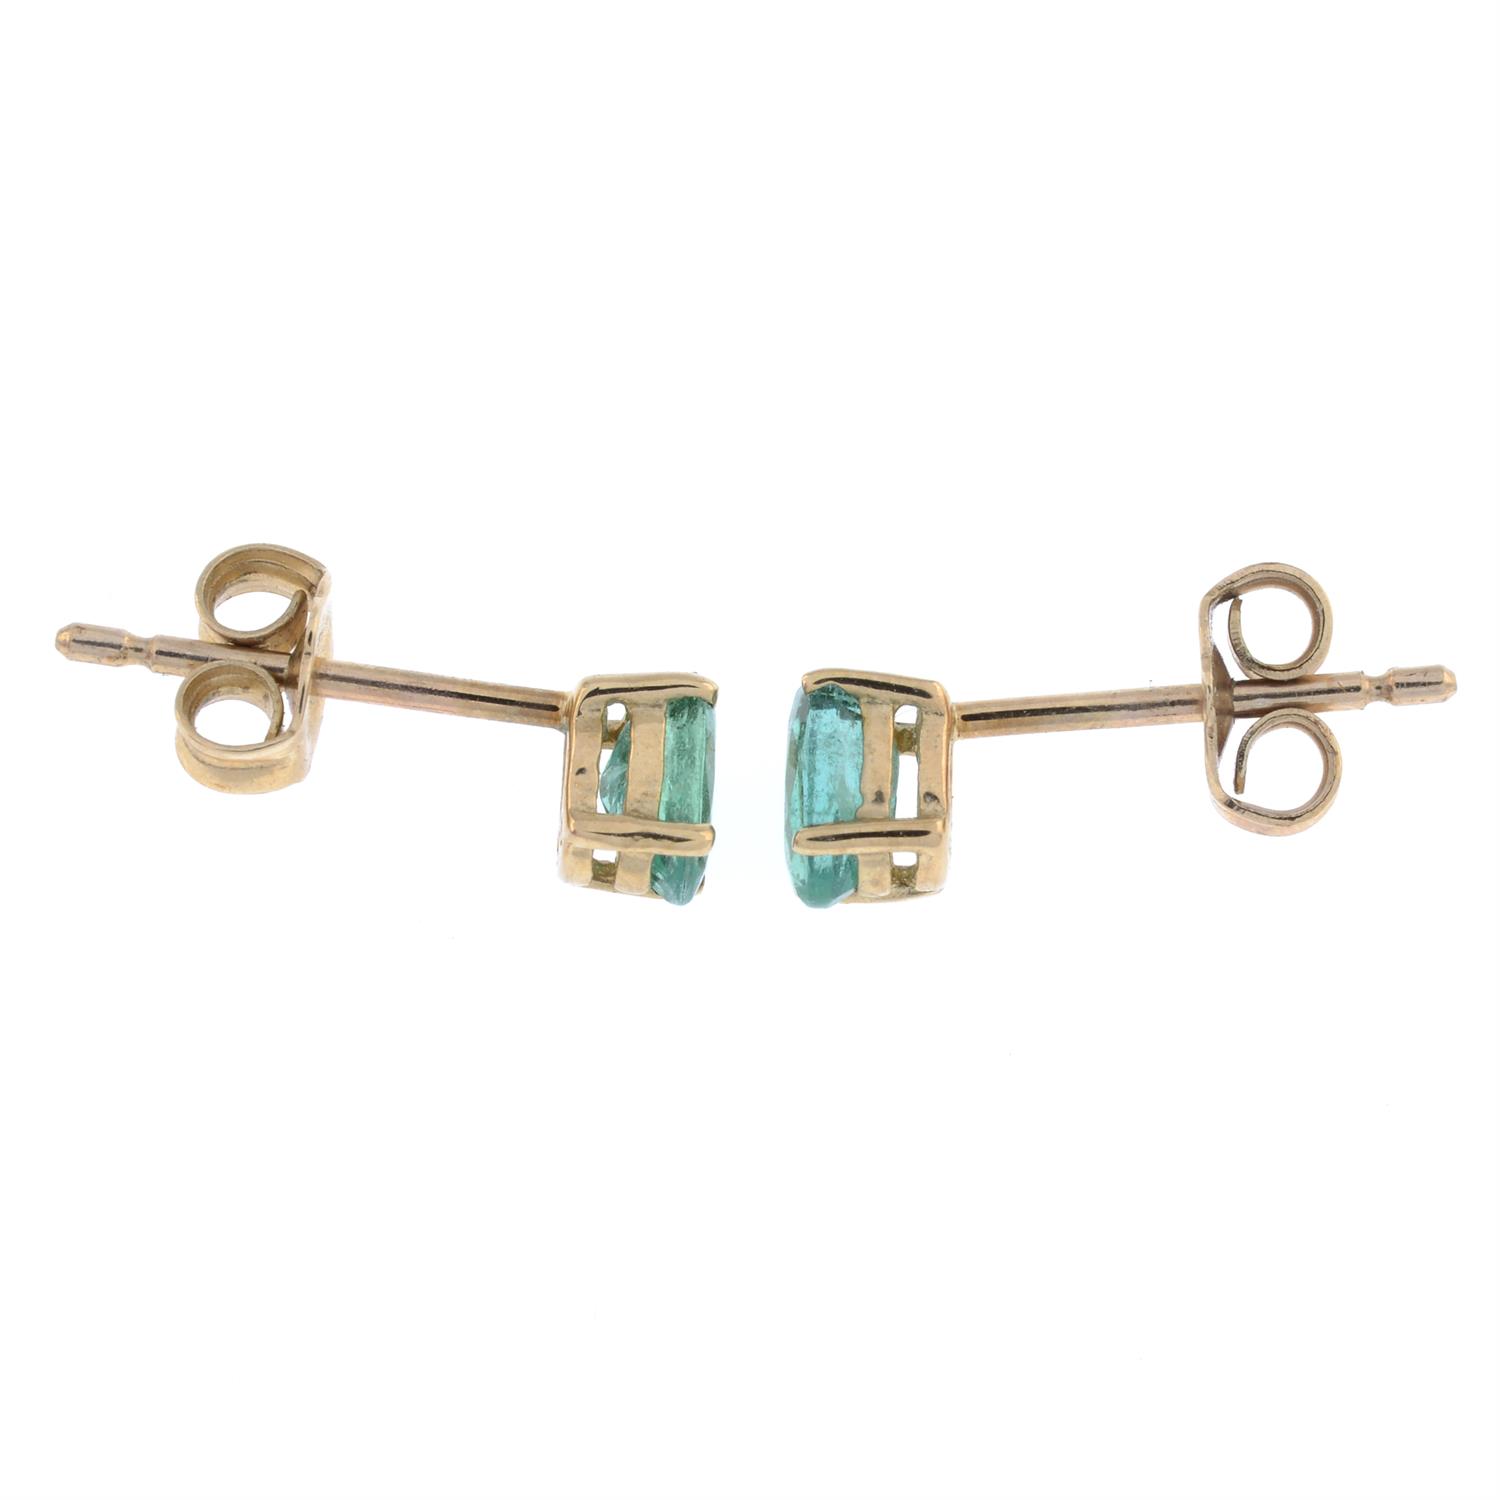 Emerald stud earrings - Image 2 of 2